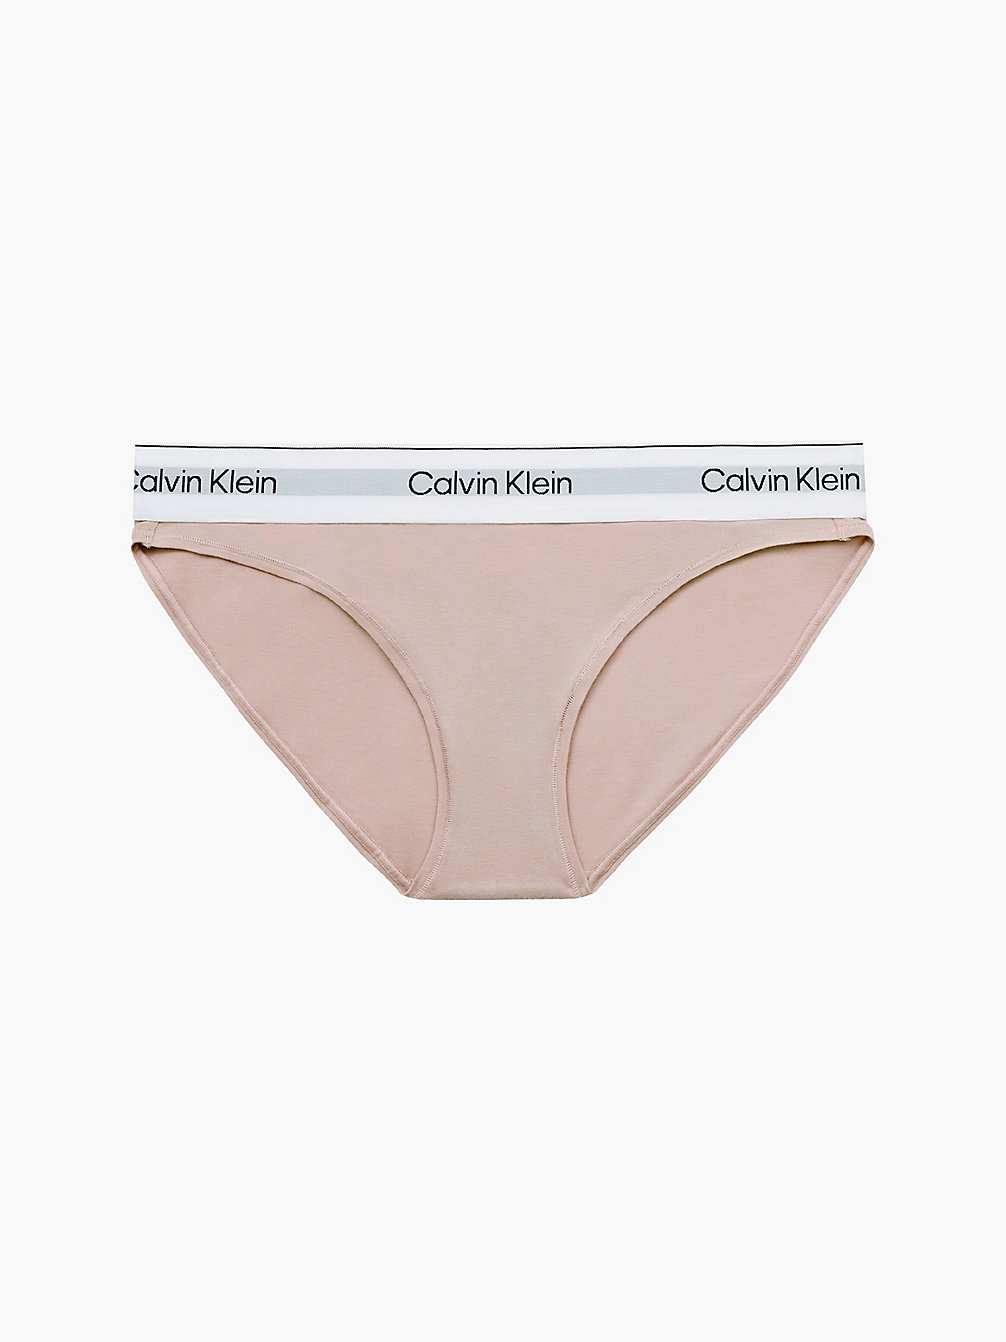 CEDAR Slip – Modern Cotton undefined Damen Calvin Klein